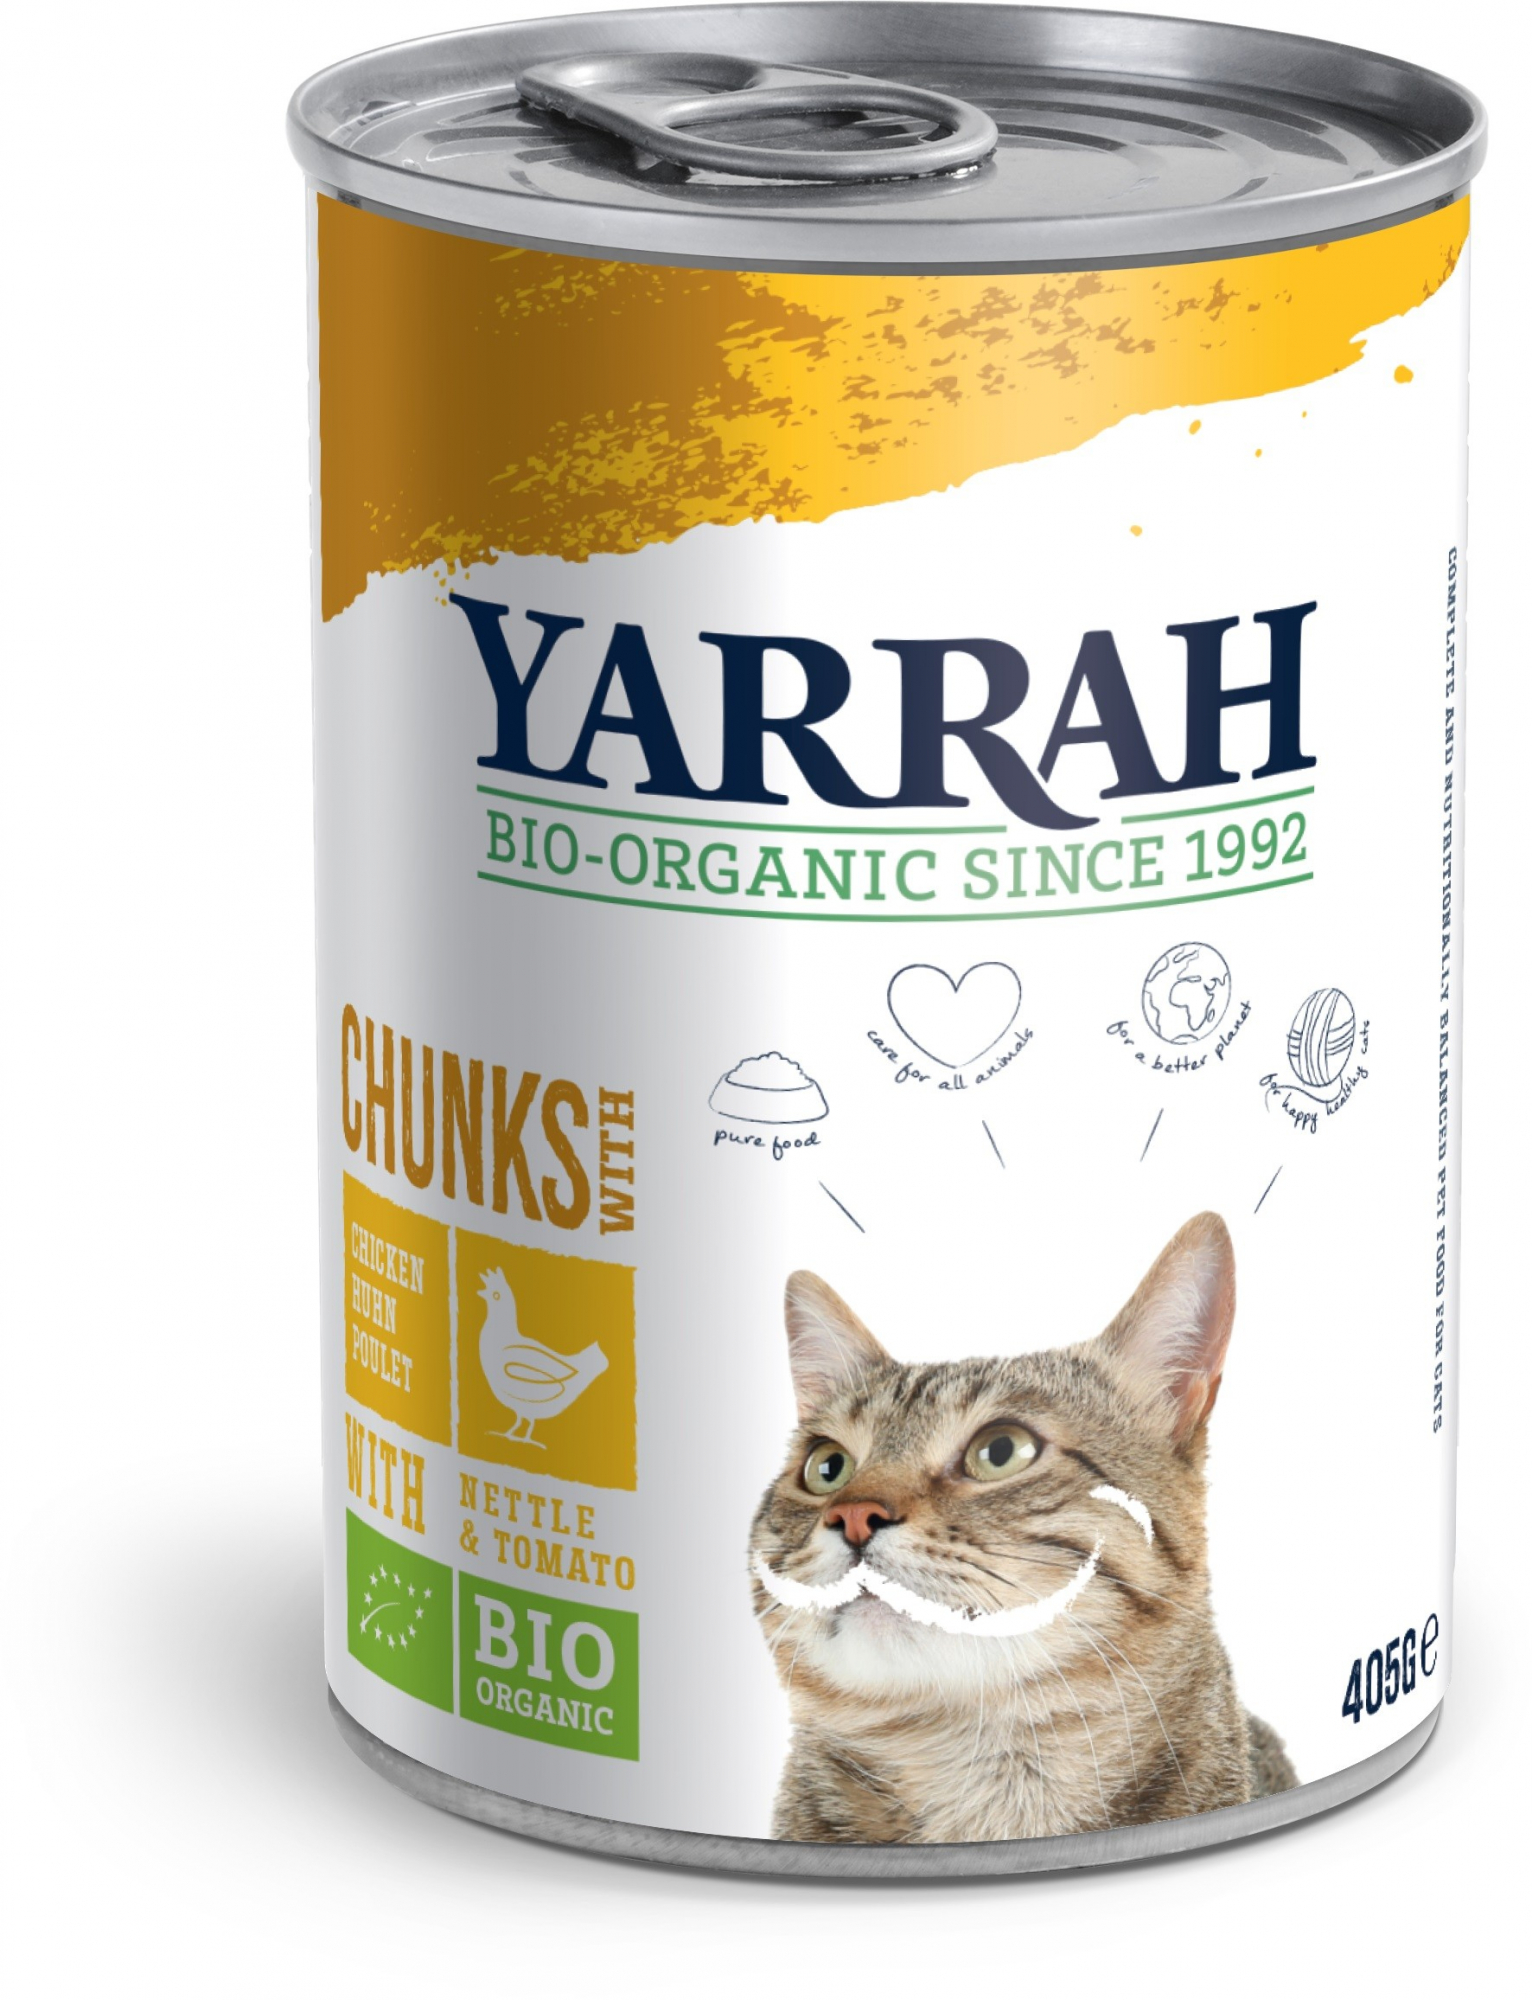 Nassfutter mit Stückchen Yarrah Bio Adult 405g ohne Getreide für Katzen - 3 Geschmacksrichtungen